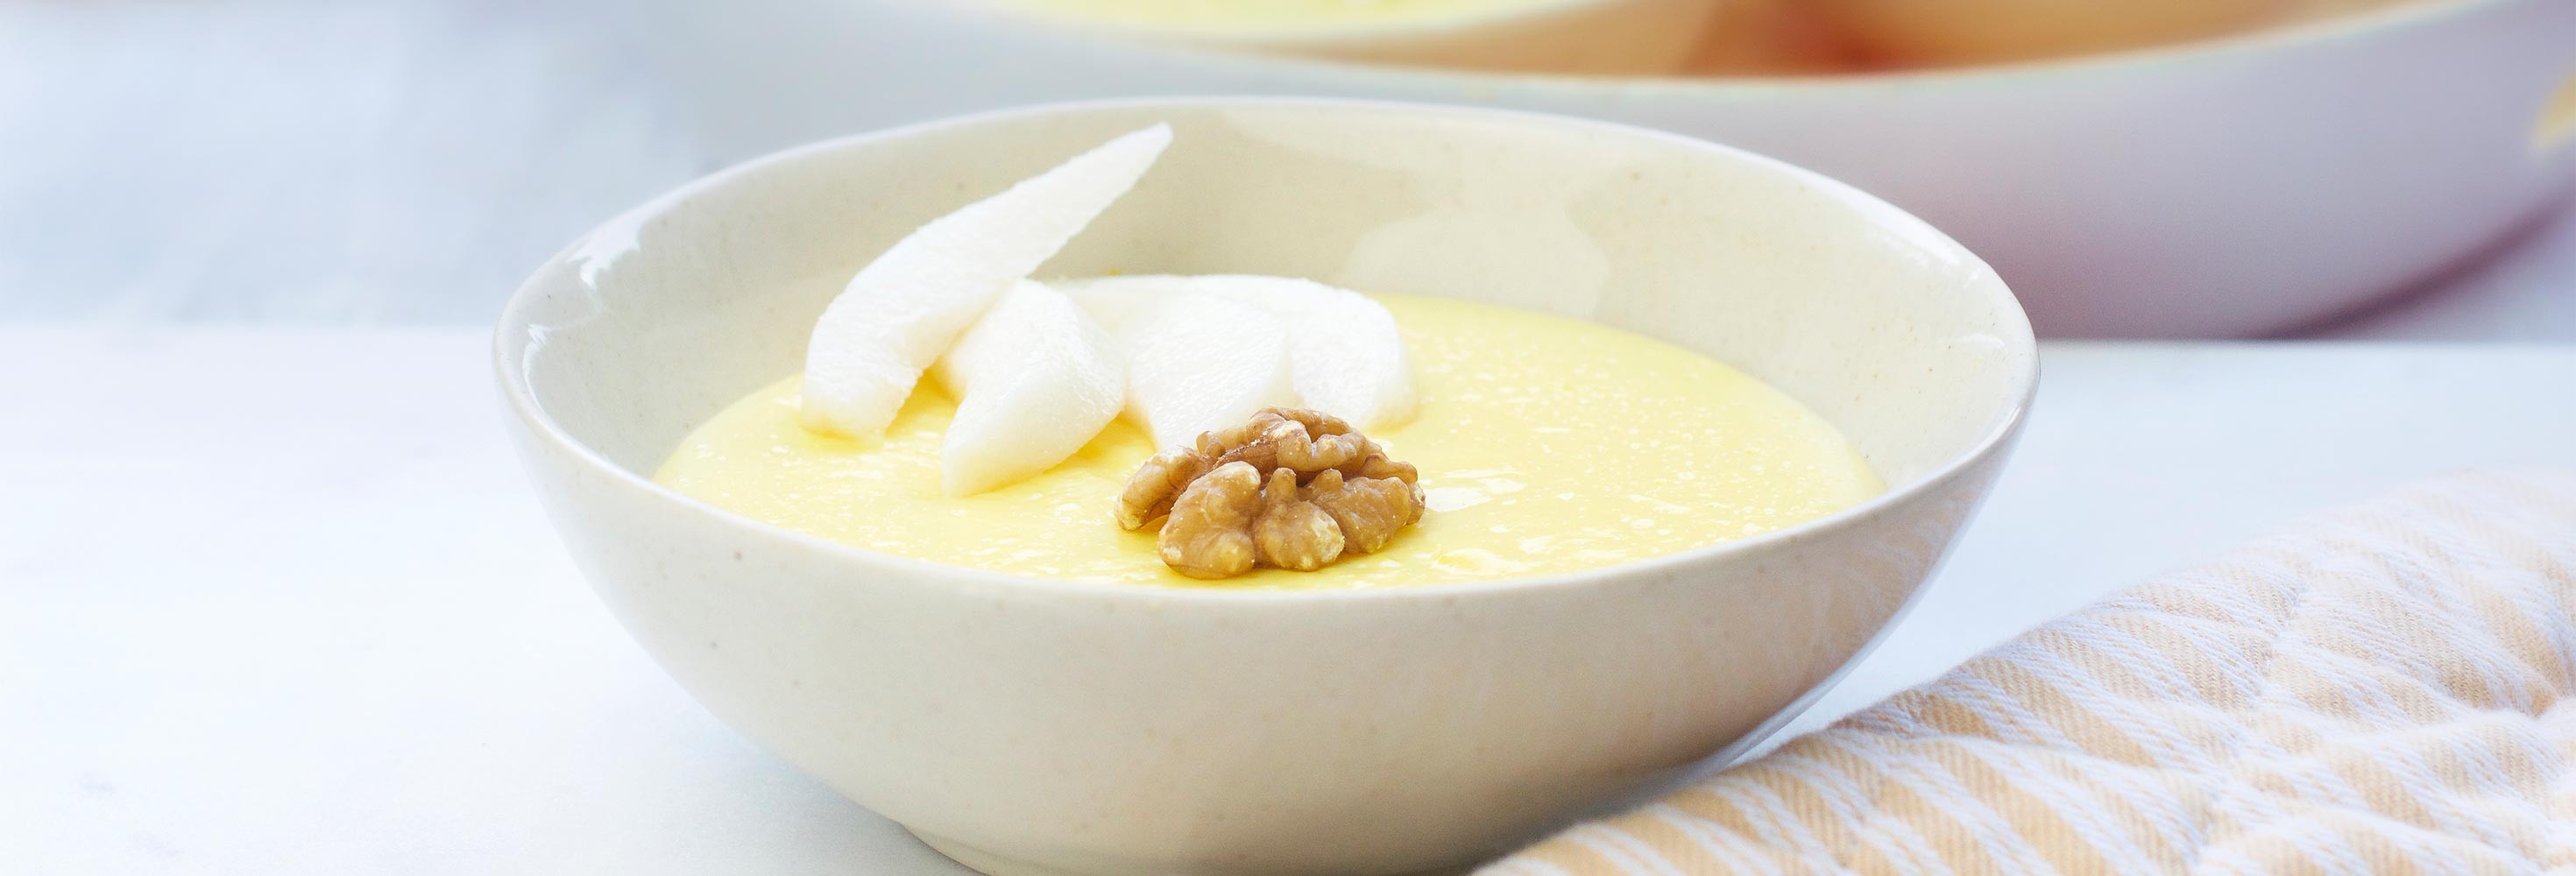 Pudding de Lait sans lactose aux poires, miel et noix